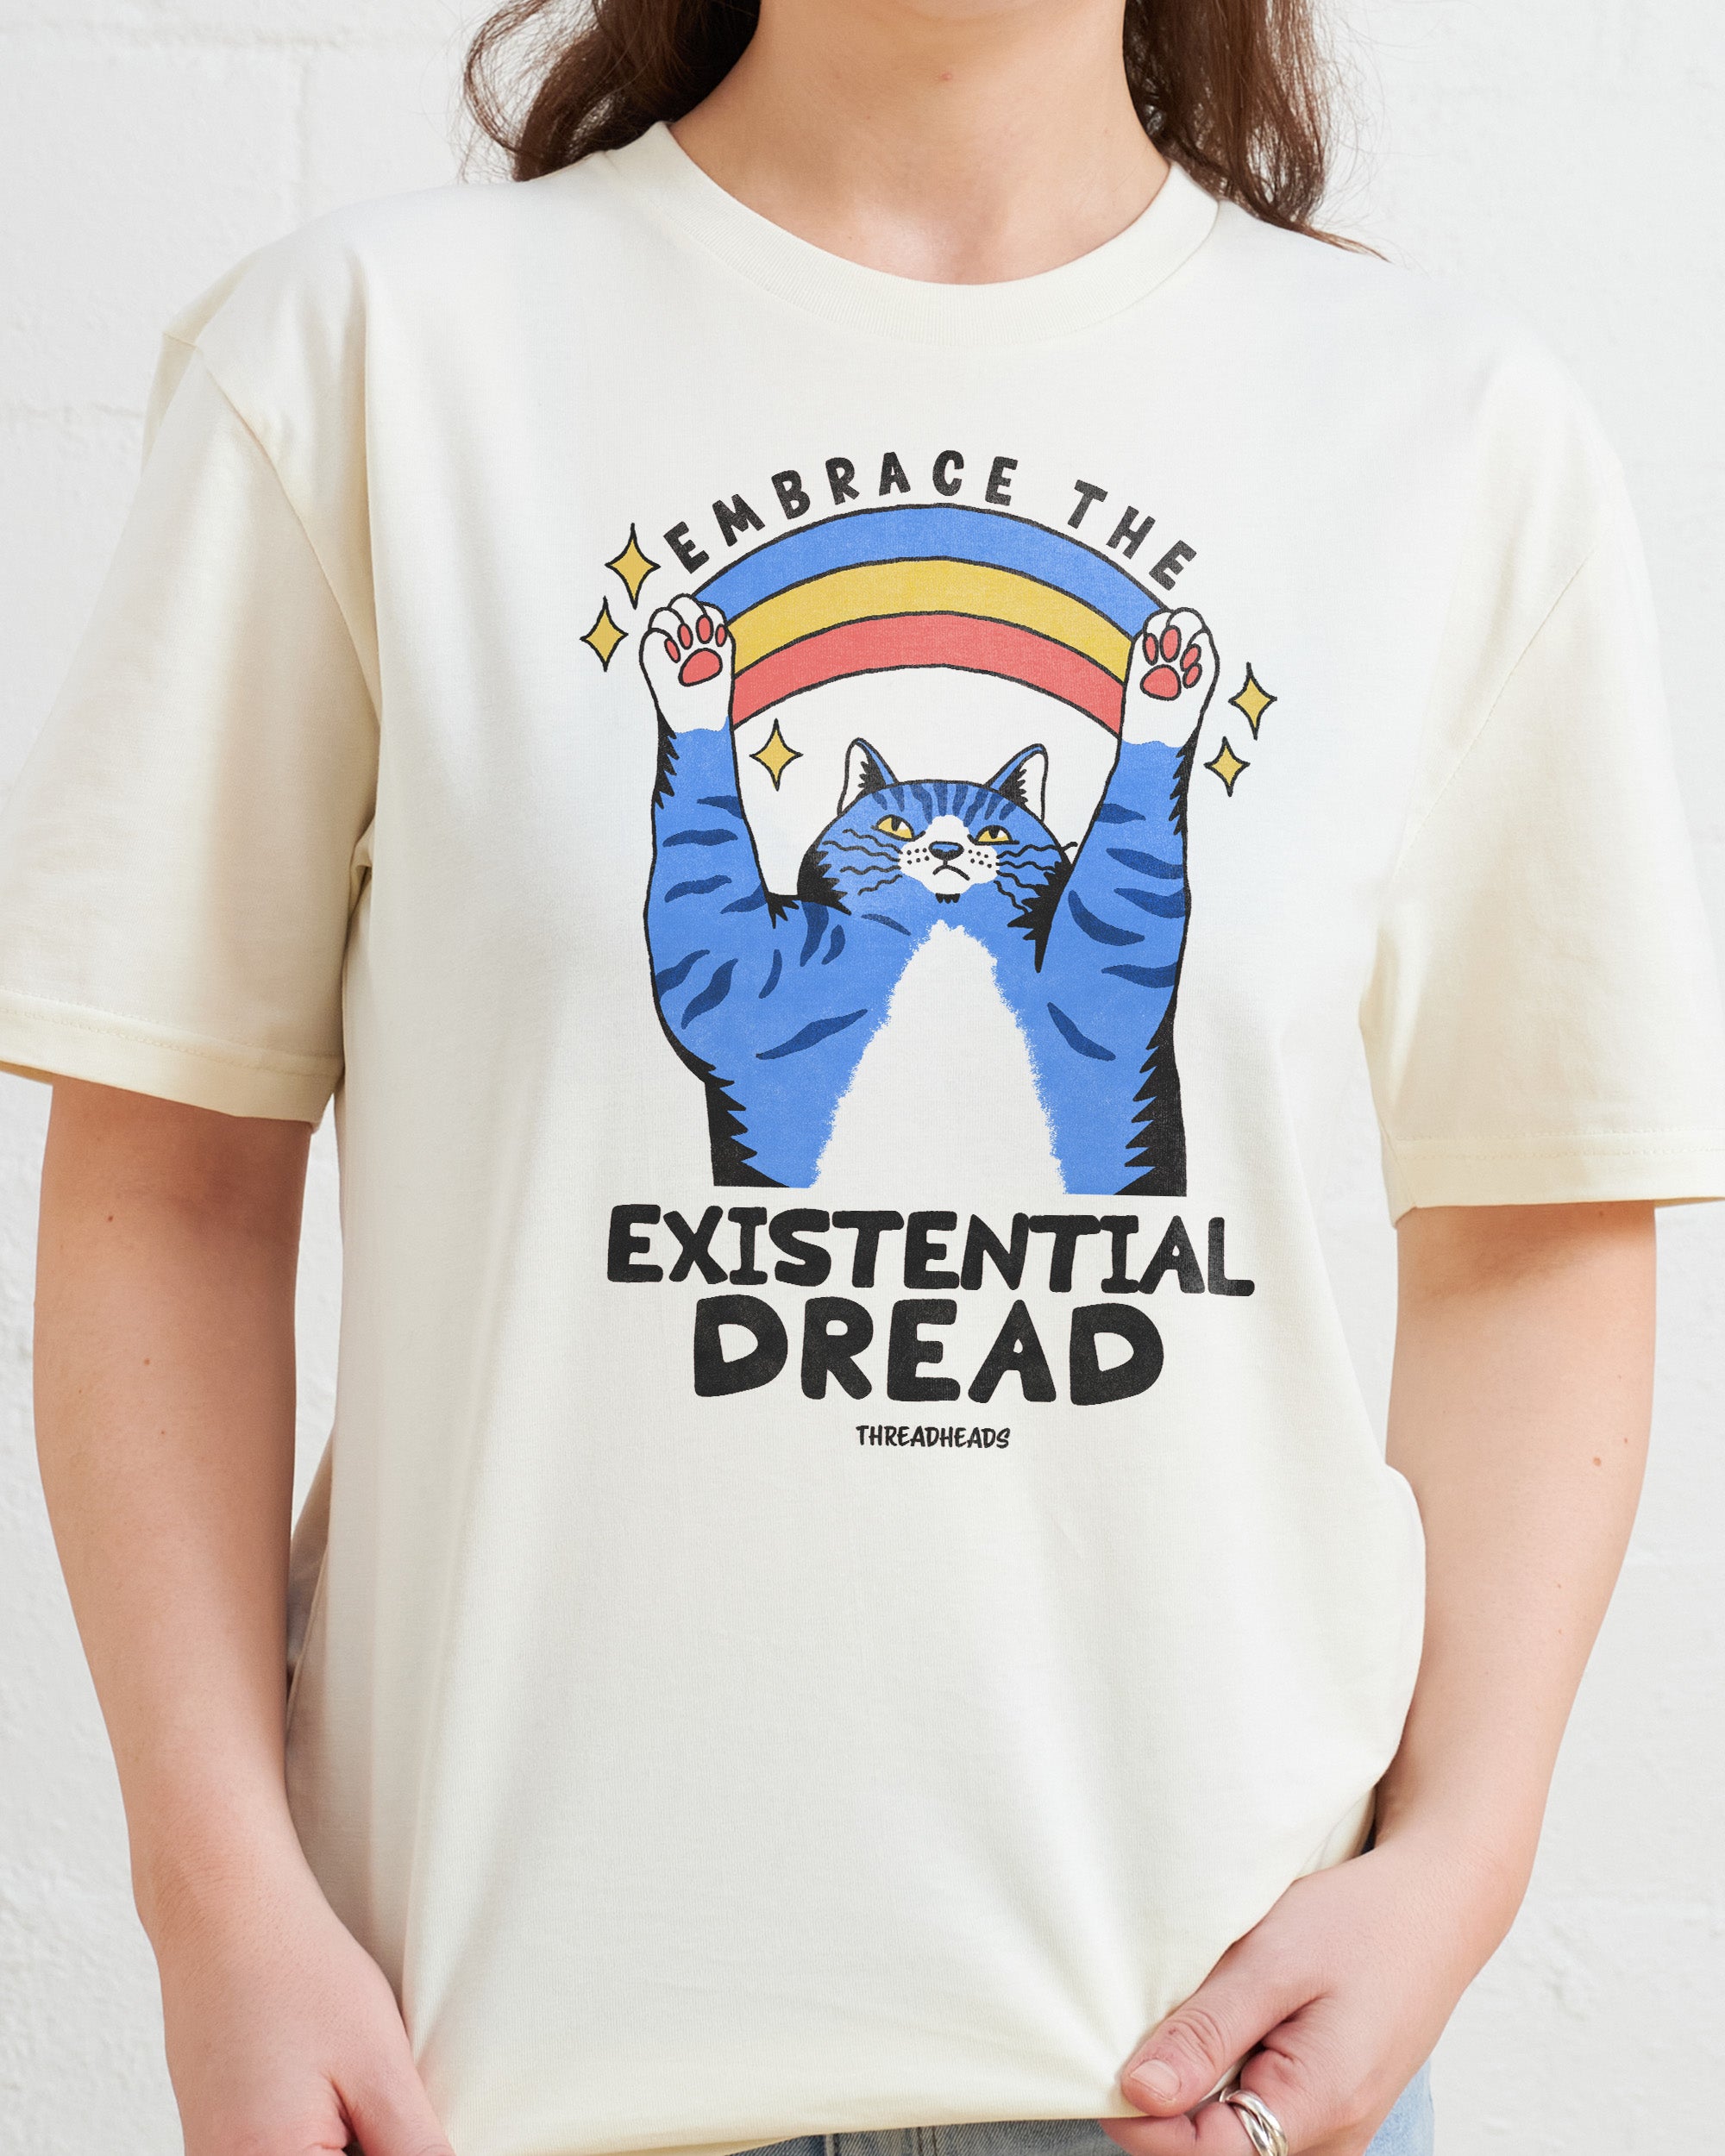 Embrace the Existential Dread T-Shirt Australia Online